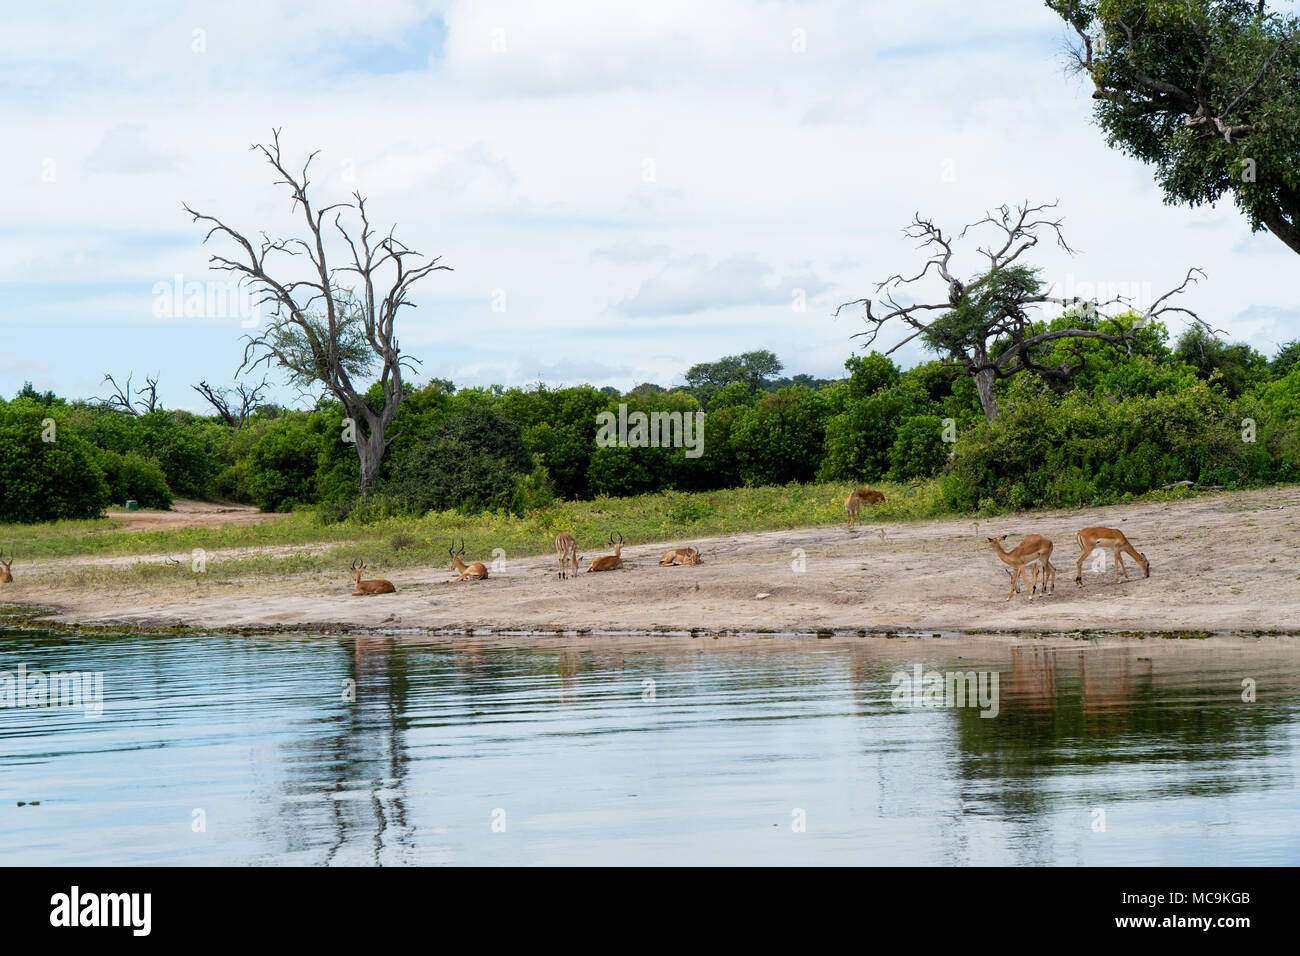 Una manada de impalas descansando cerca del agua, el Lago Kariba, Zimbabwe Foto de stock